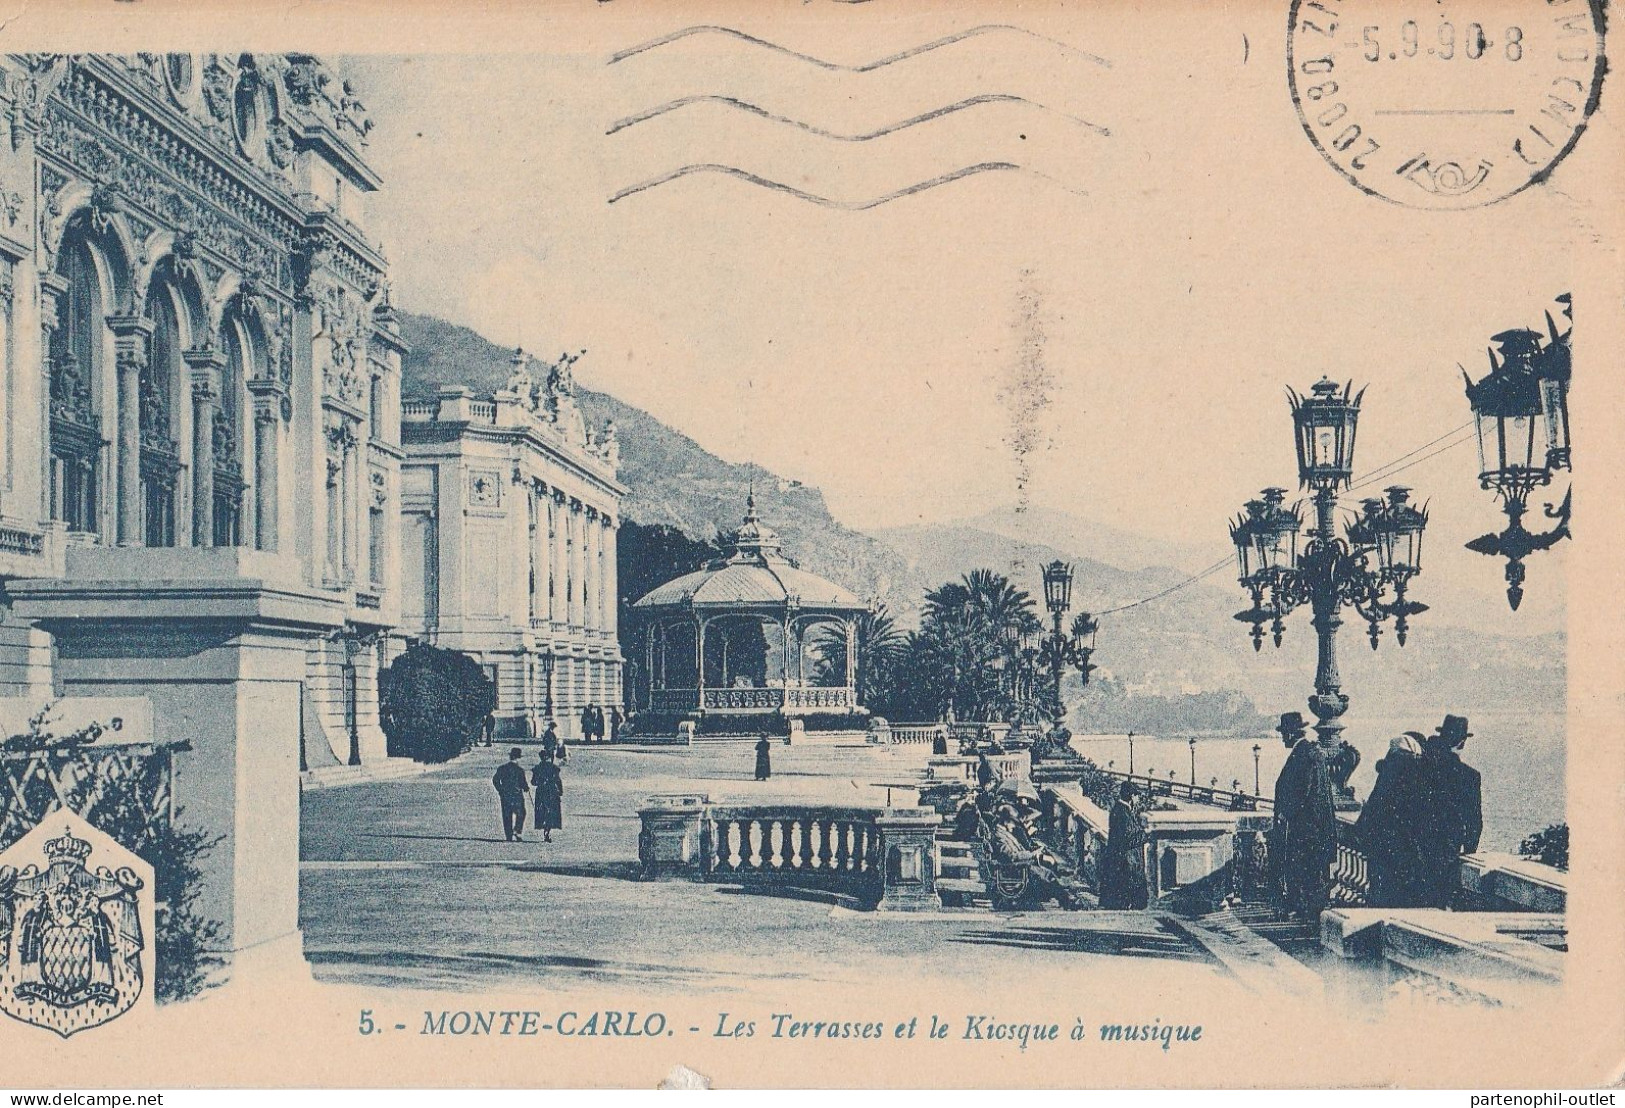 Cartolina  - Postcard /  Viaggiata - Sent  /  Montecarlo - Les Terrasses - Le Terrazze